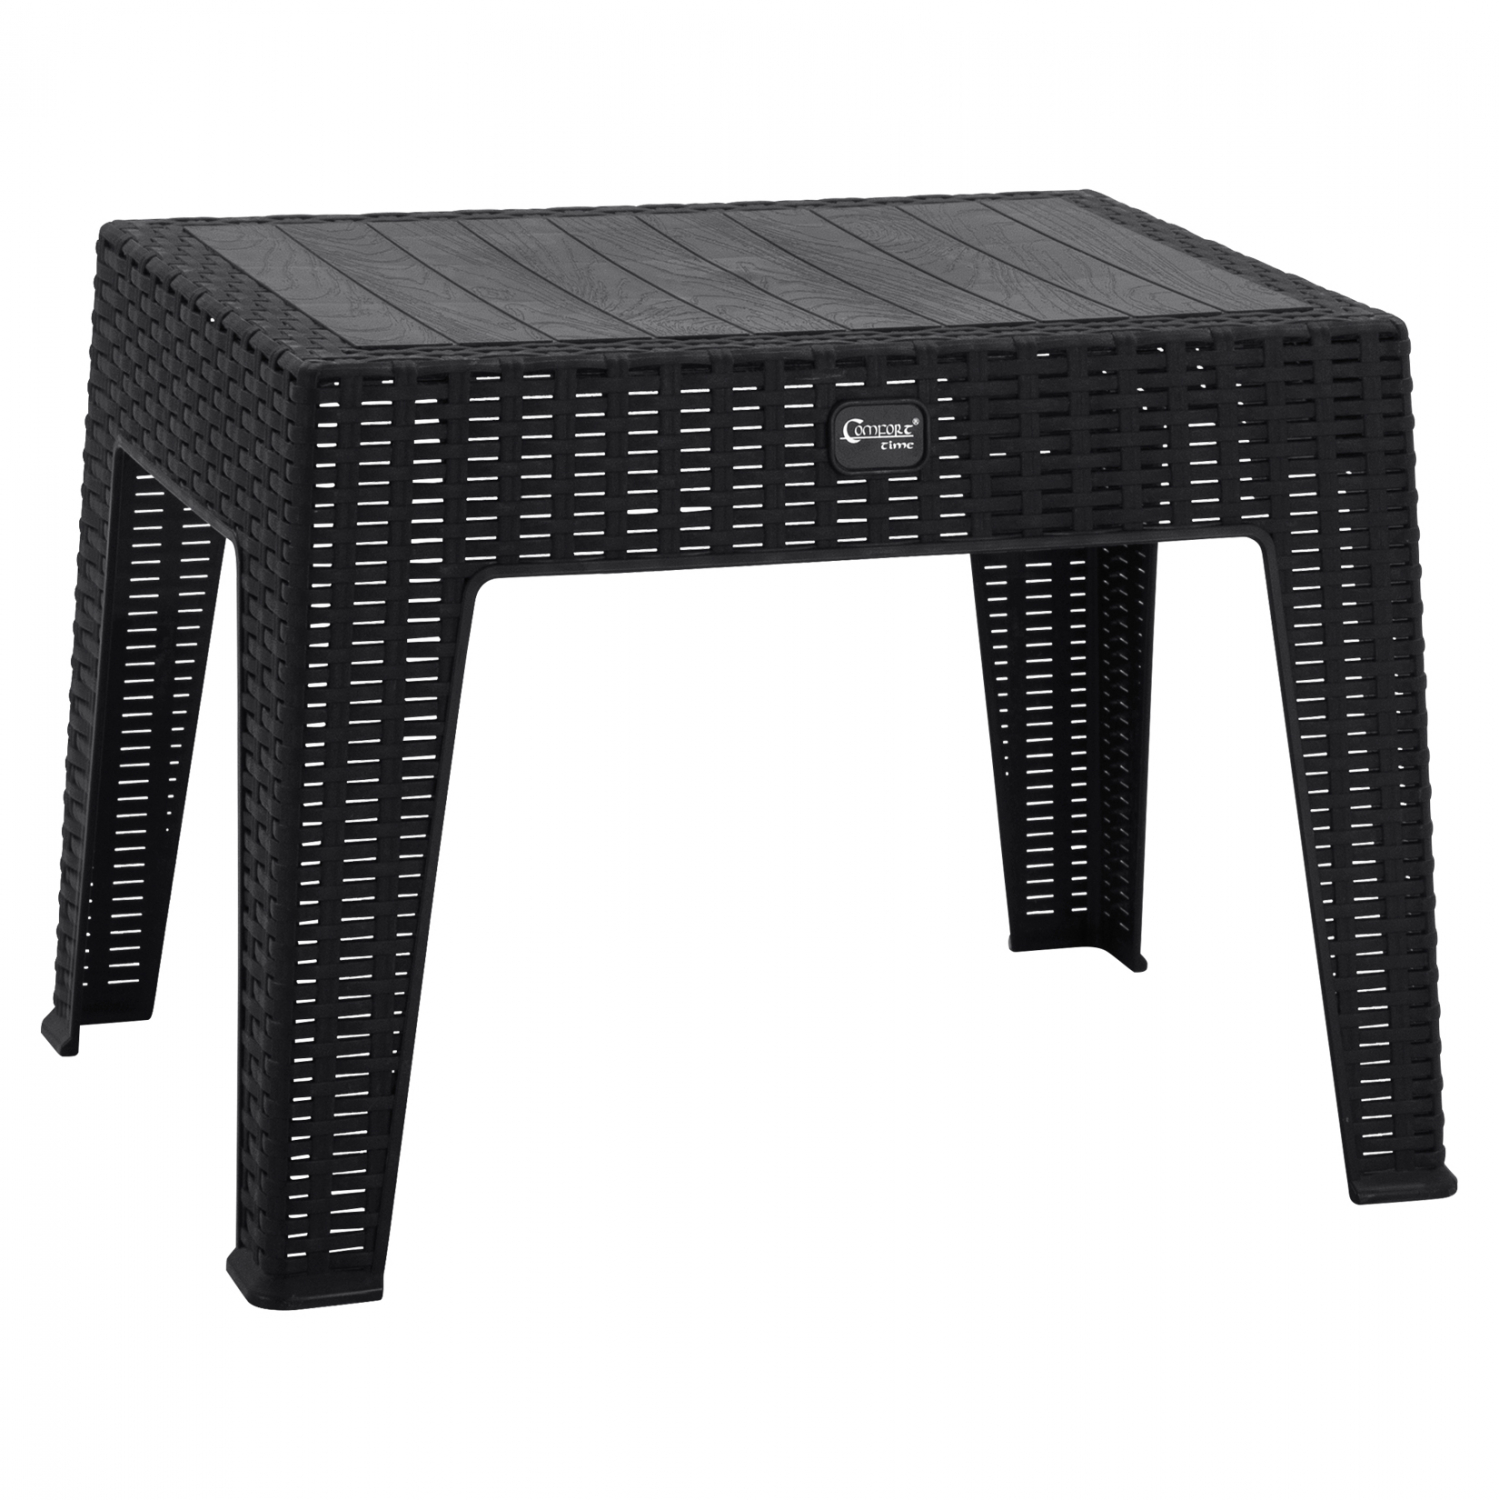 Τραπέζι από PP/rattan σε γκρι χρώμα 61×45.5×43